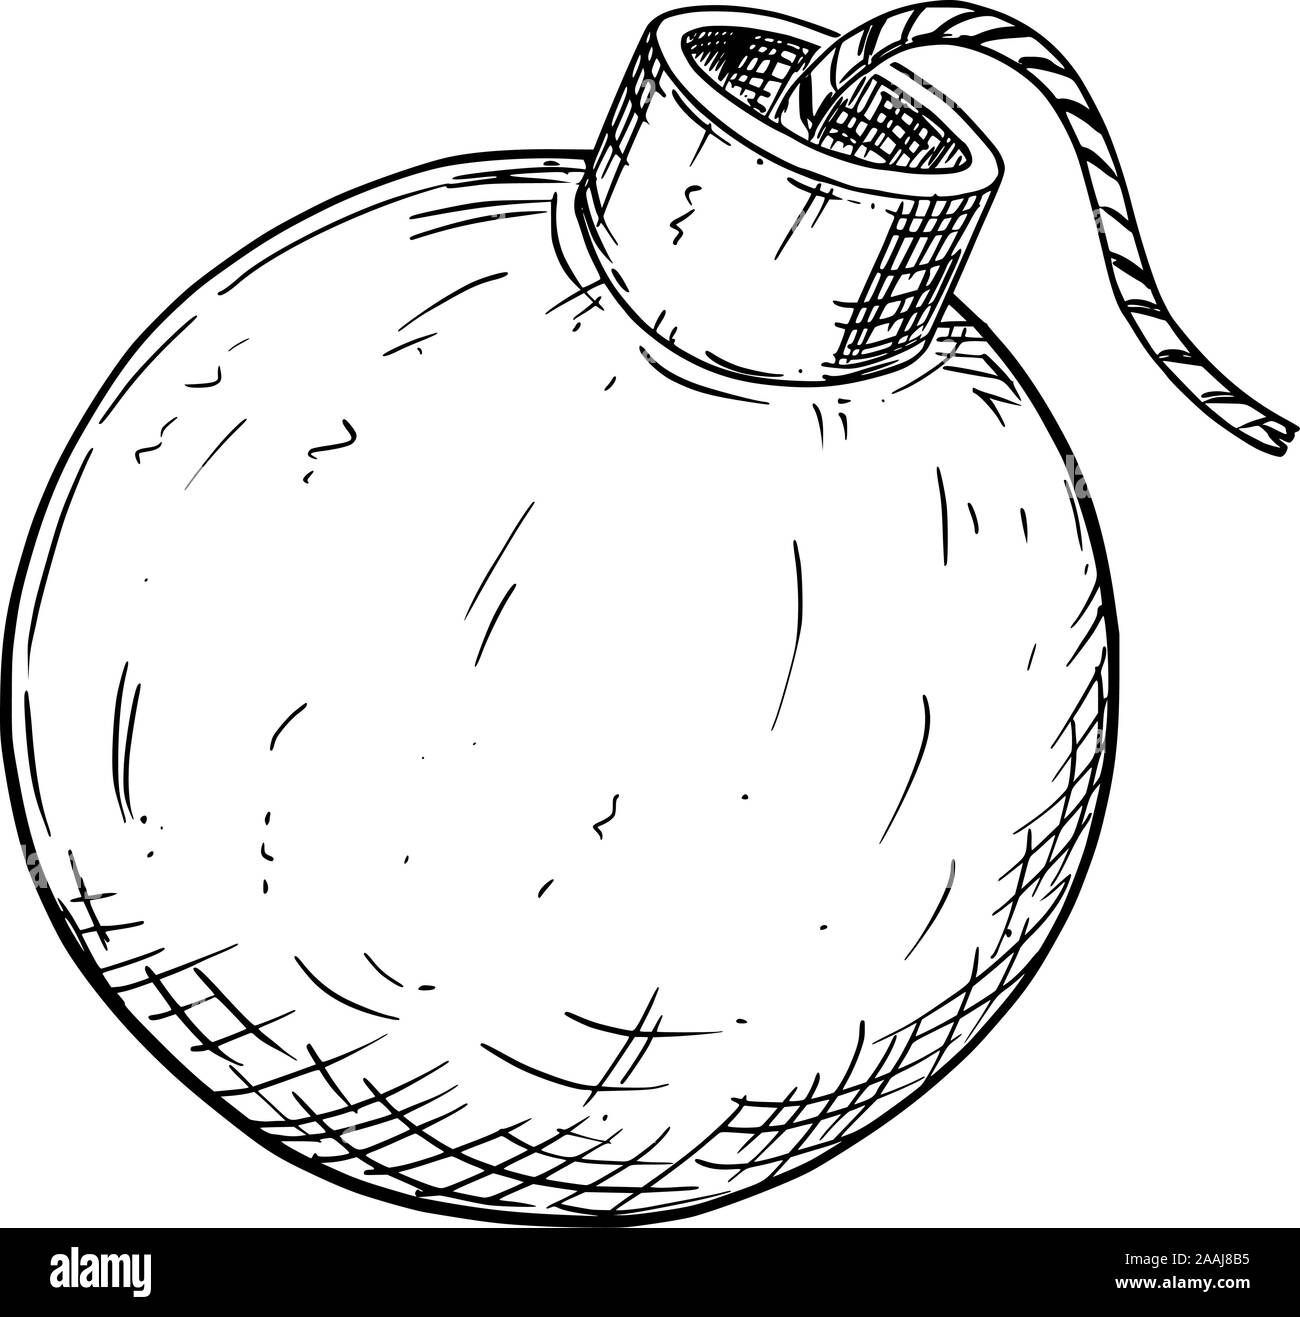 Vector Abbildung oder Zeichnung der Bombe mit Sicherung. Stock Vektor